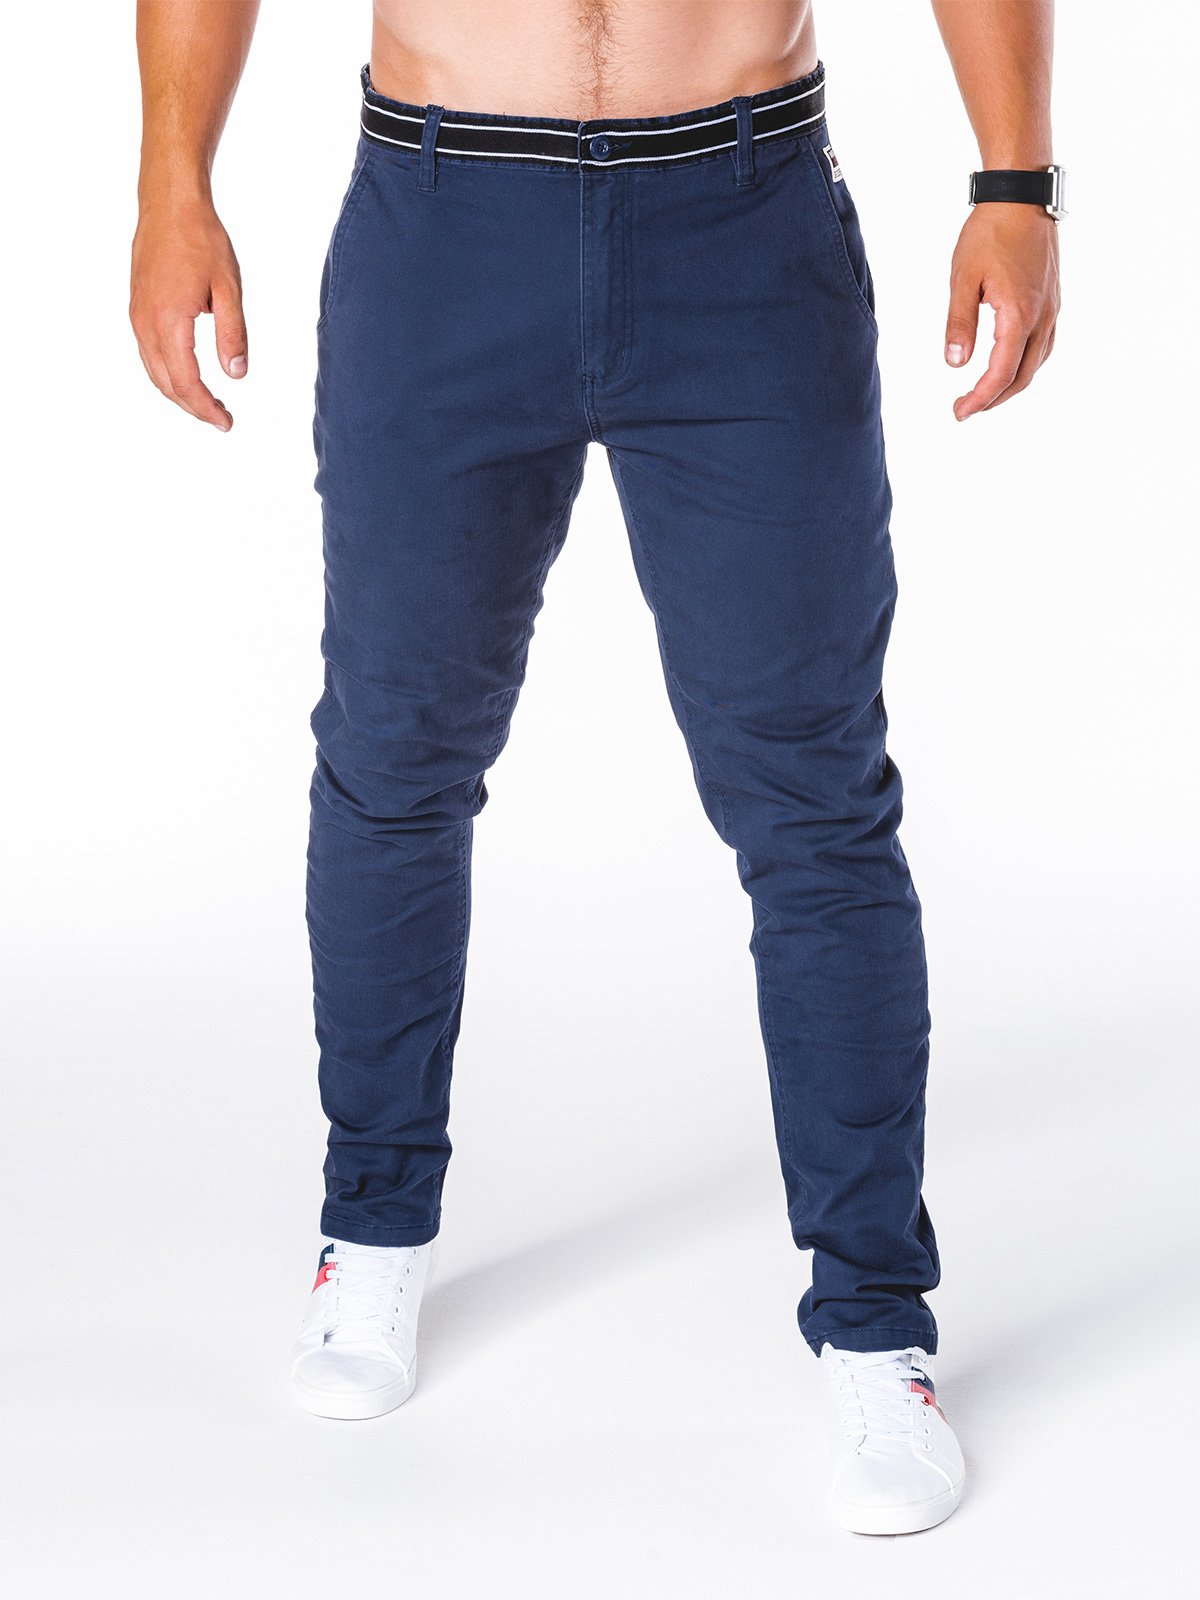 Men's pants Ombre P156